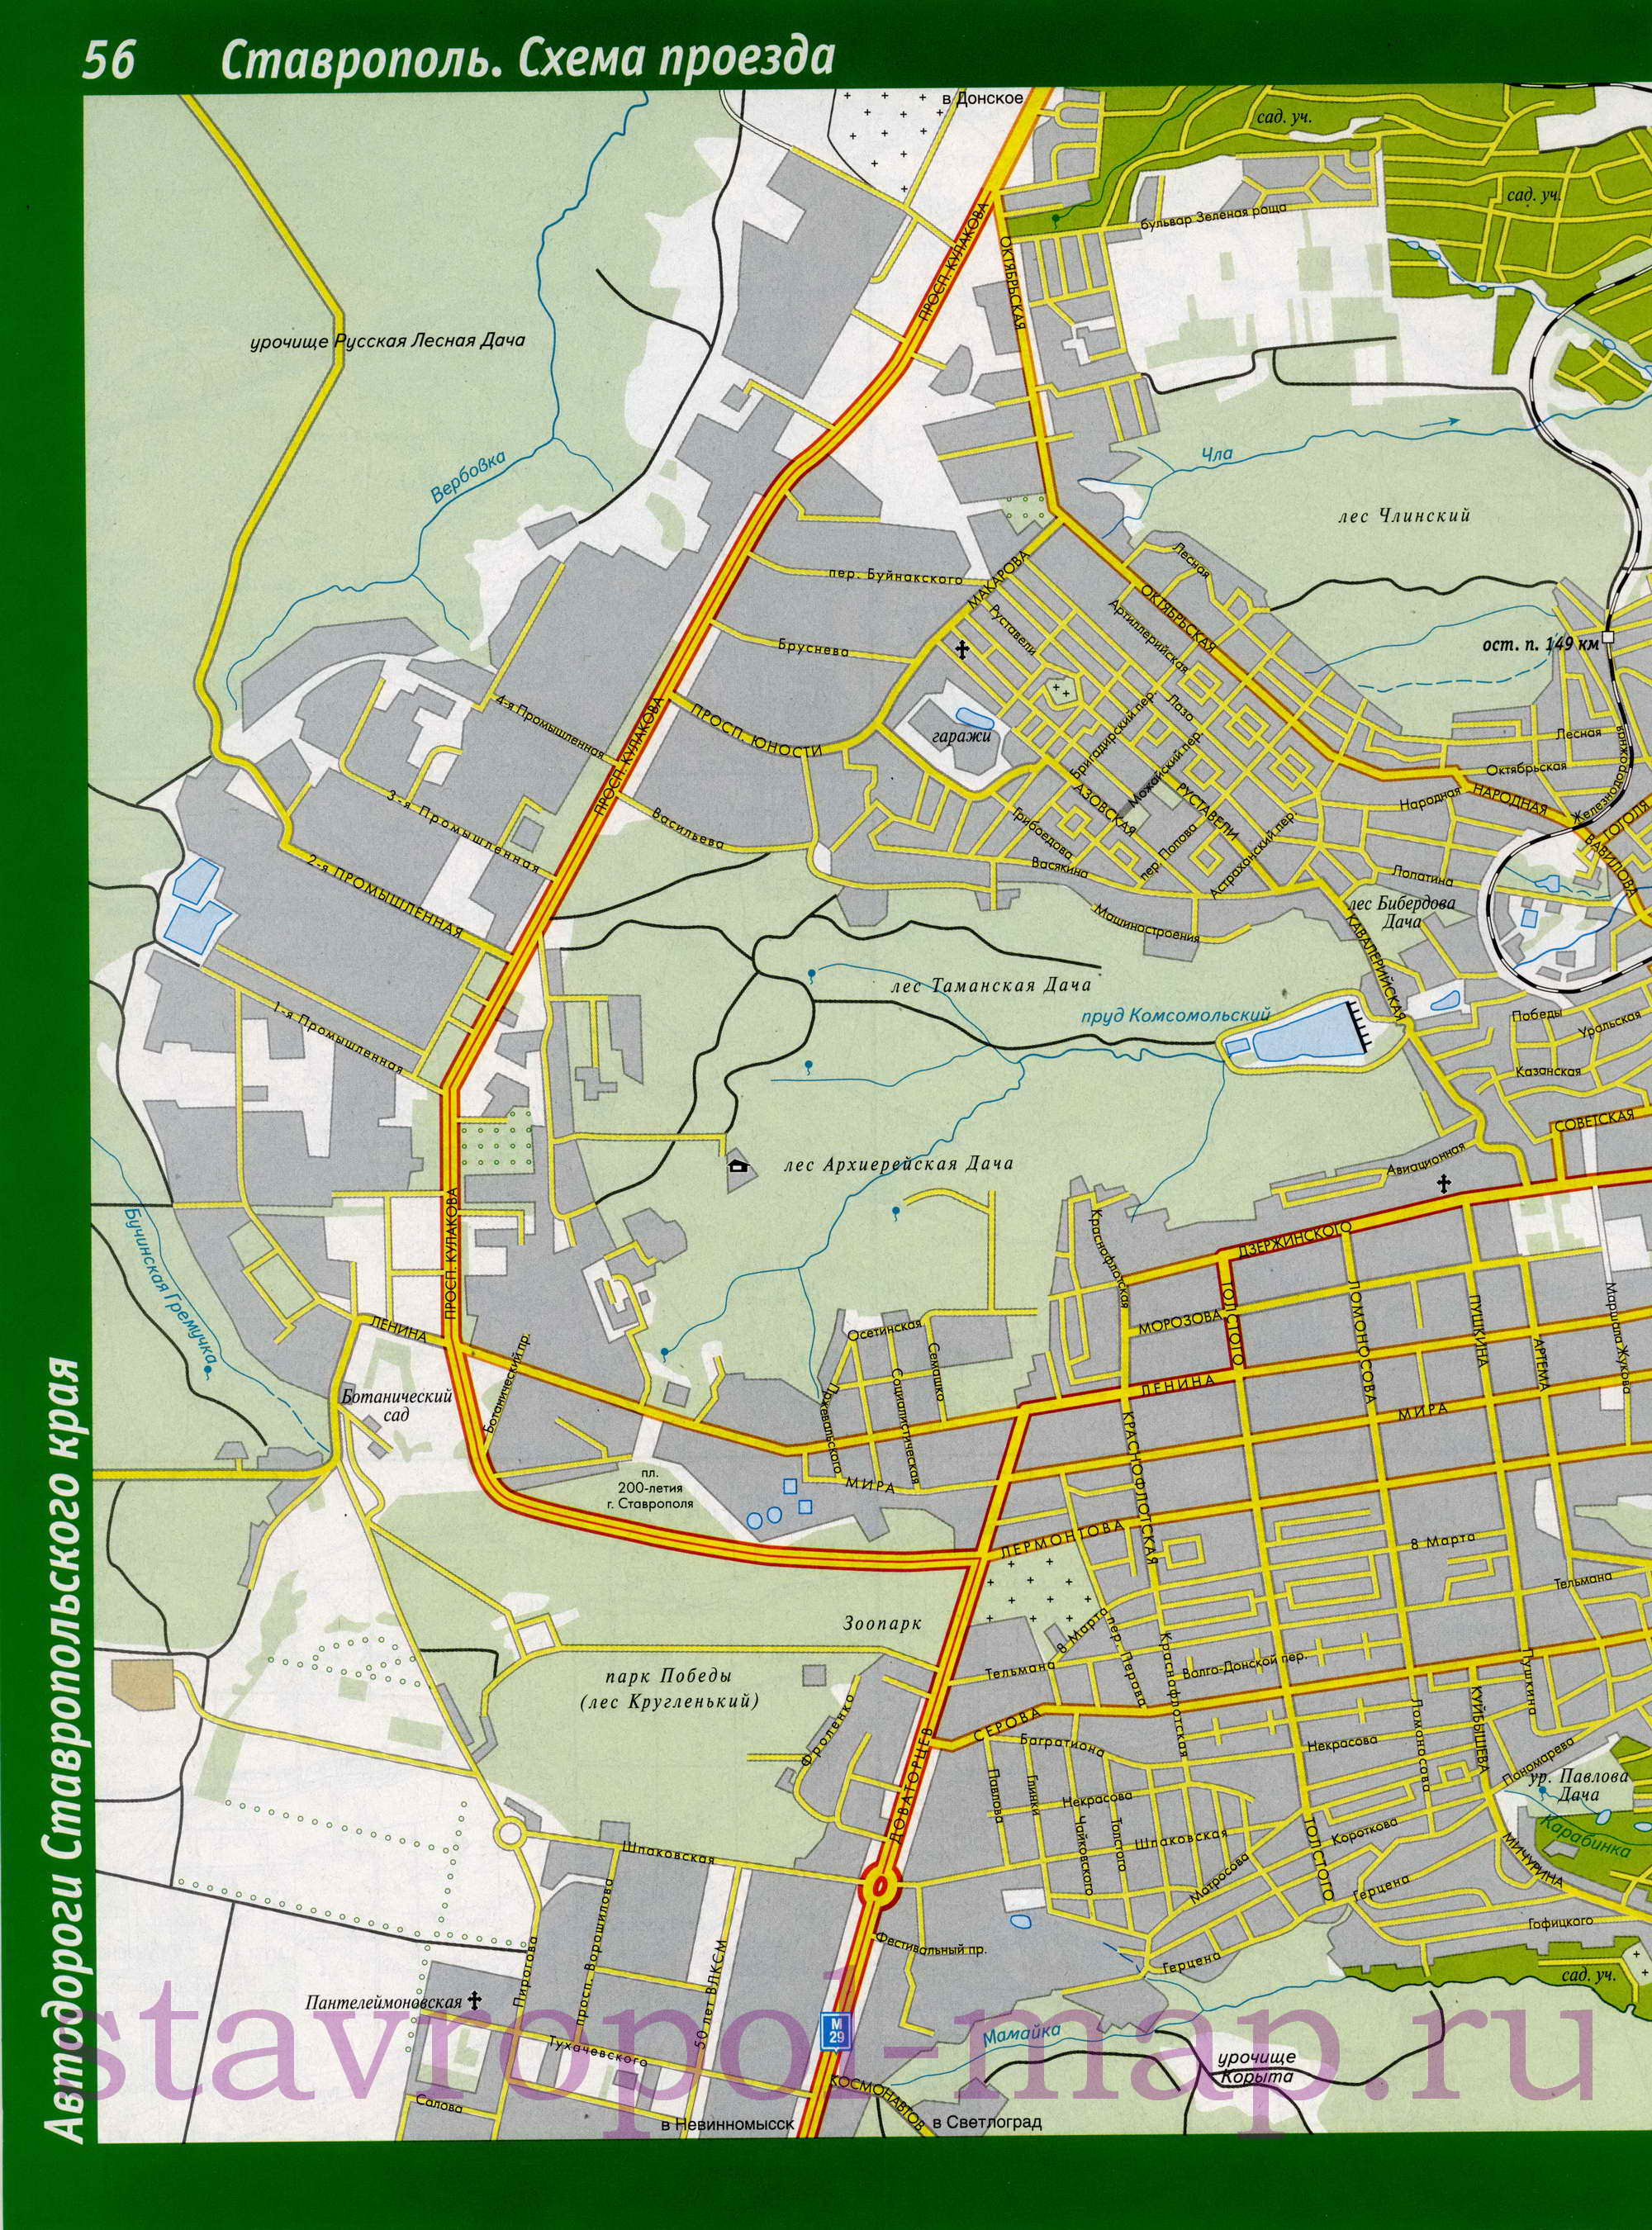  Карта Ставрополя. Карта улиц города Ставрополь. Карта схема проезда через г Ставрополь, A0 - 